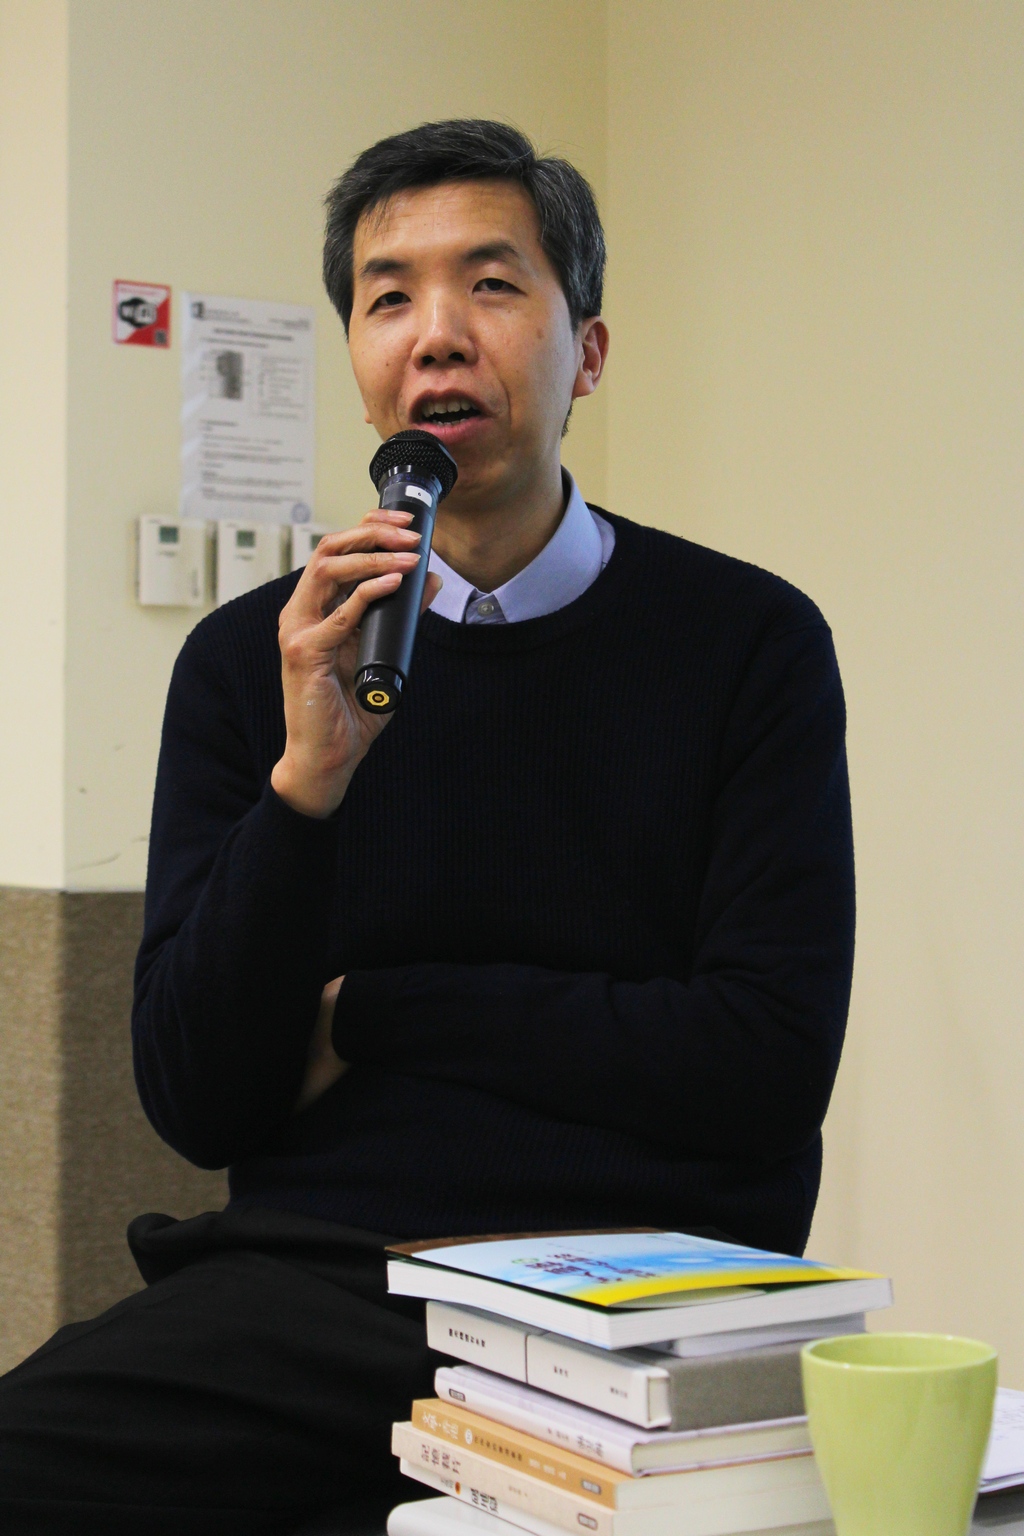 主講嘉賓：匯智出版有限公司主責編輯羅國洪先生。